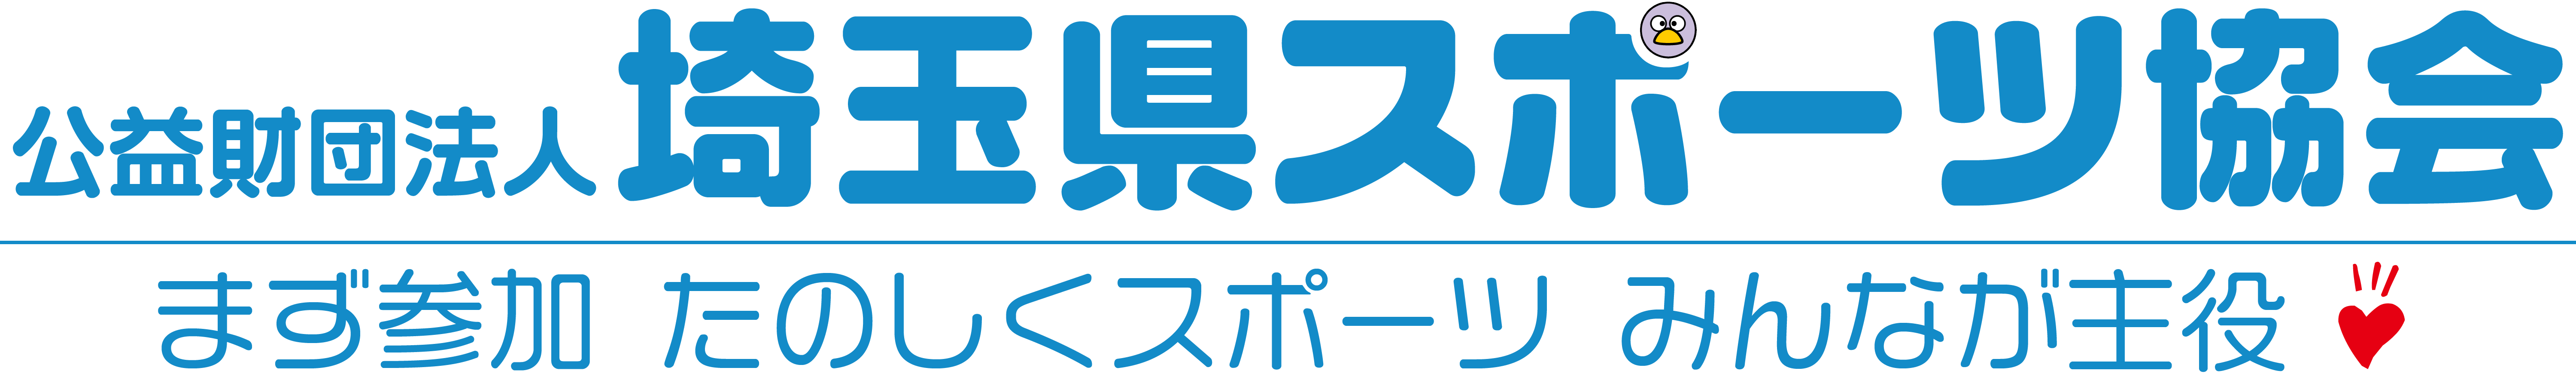 埼玉県スポーツ協会